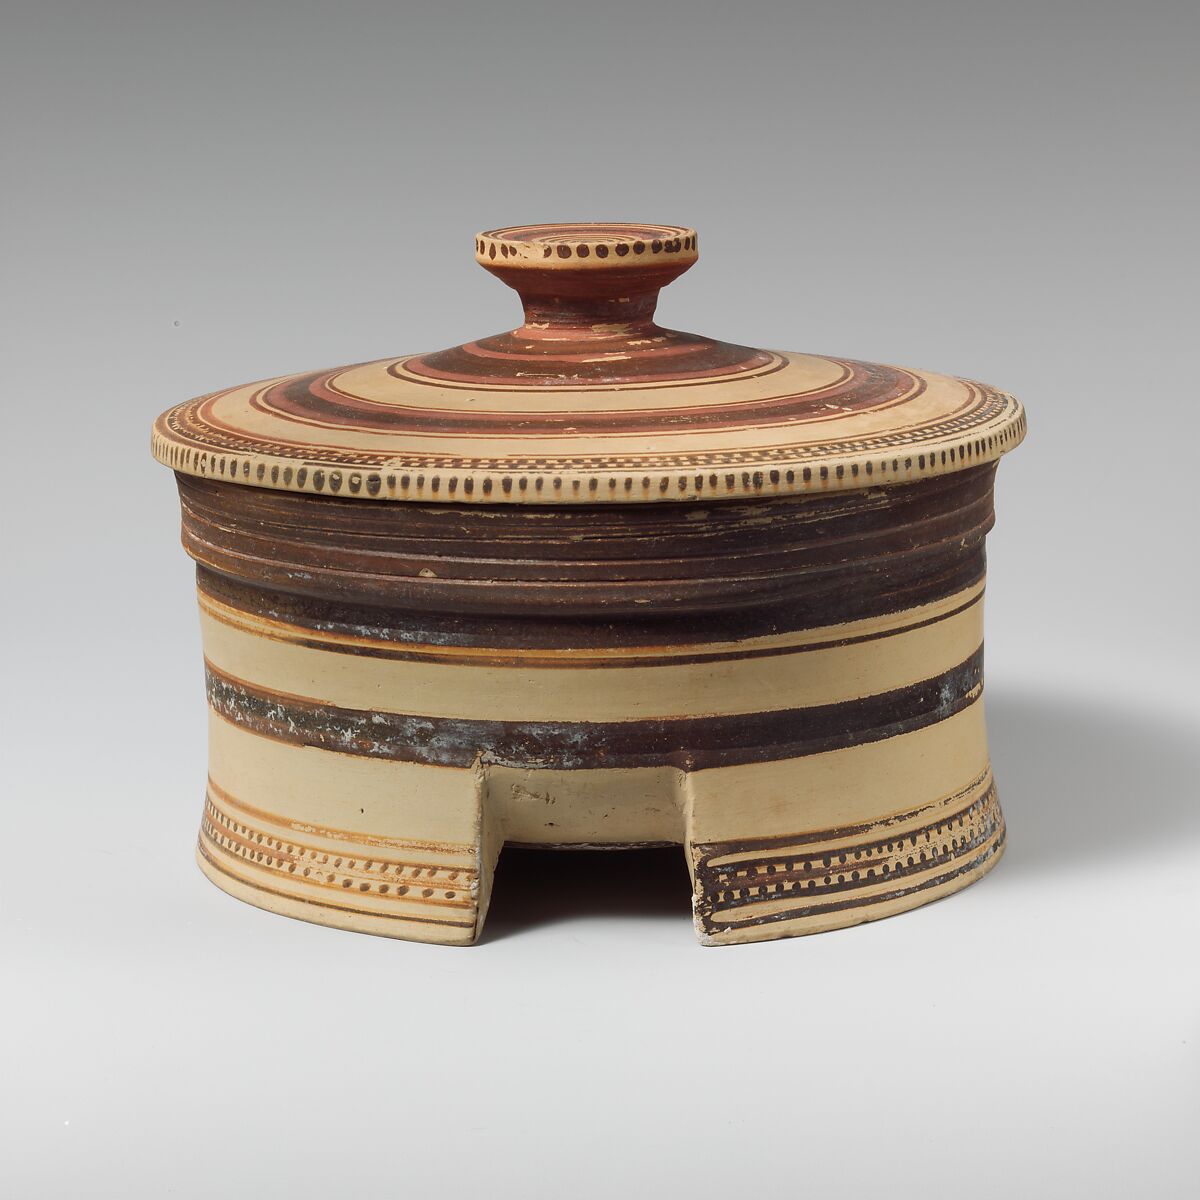 Terracotta tripod-pyxis (box), Terracotta, Greek, Corinthian 